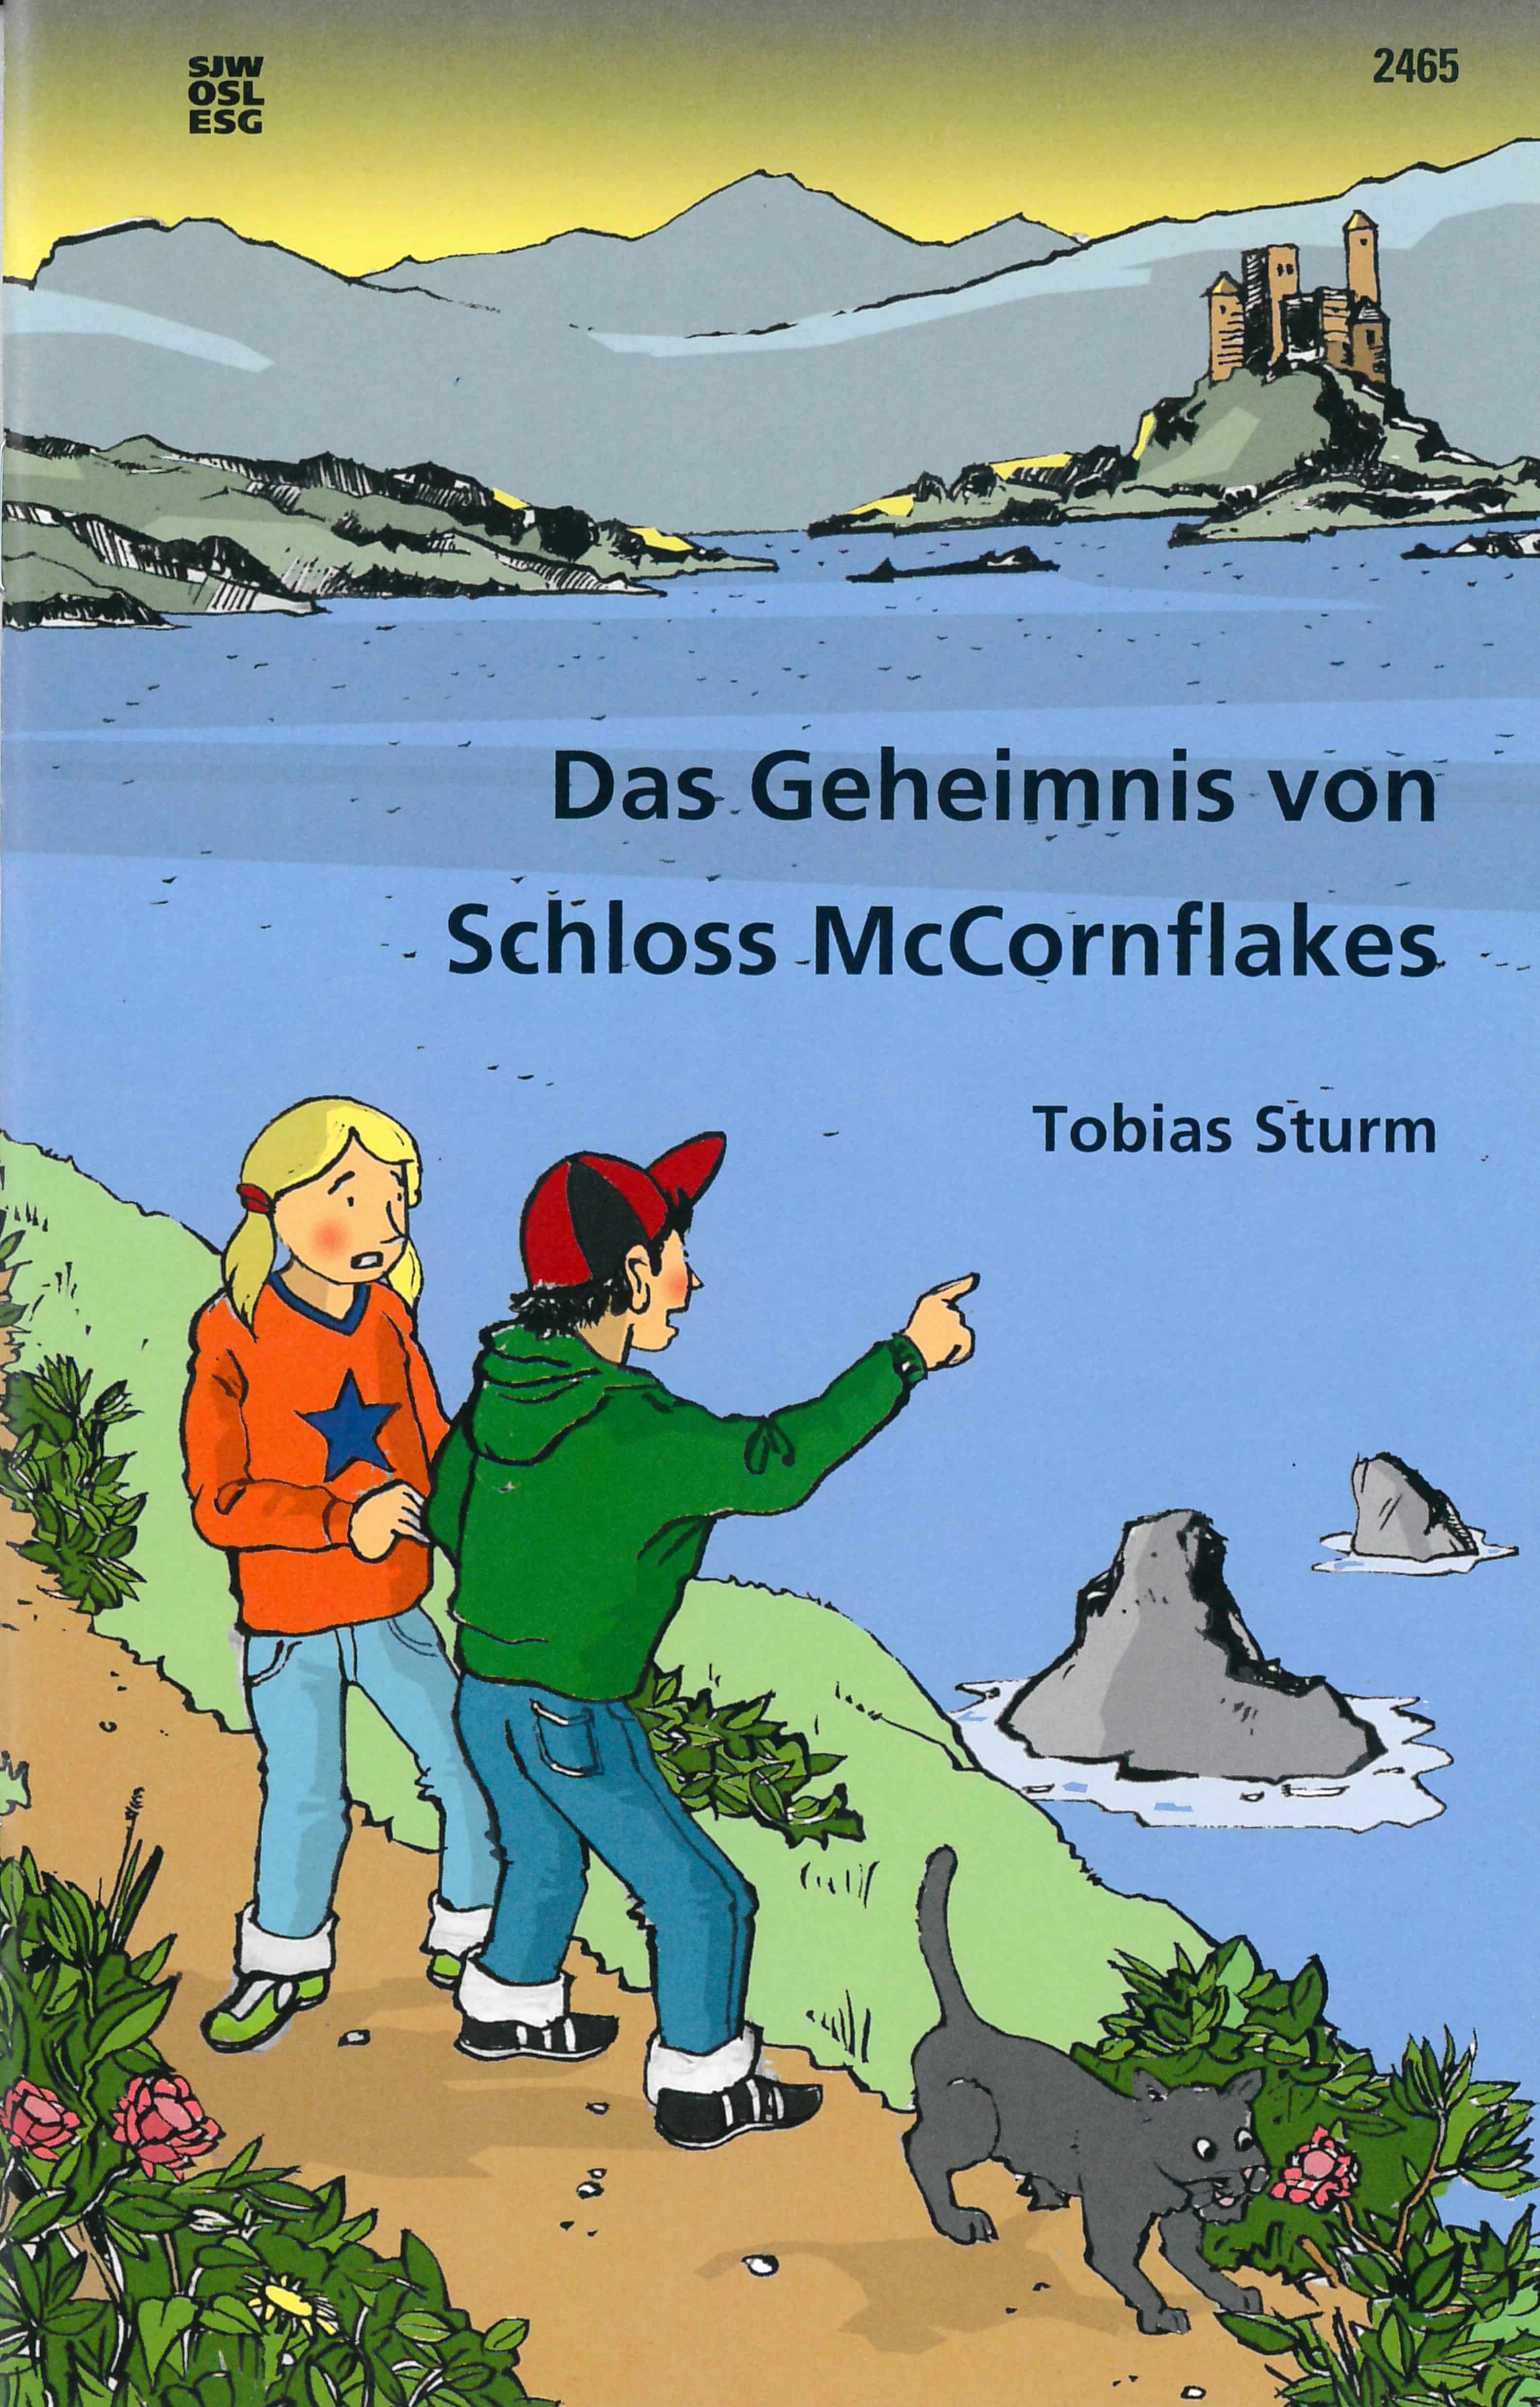 Das Geheimnis von Schloss McCornflakes, ein Kinderbuch von Tobias Sturm, SJW Verlag, Raetselgeschichte